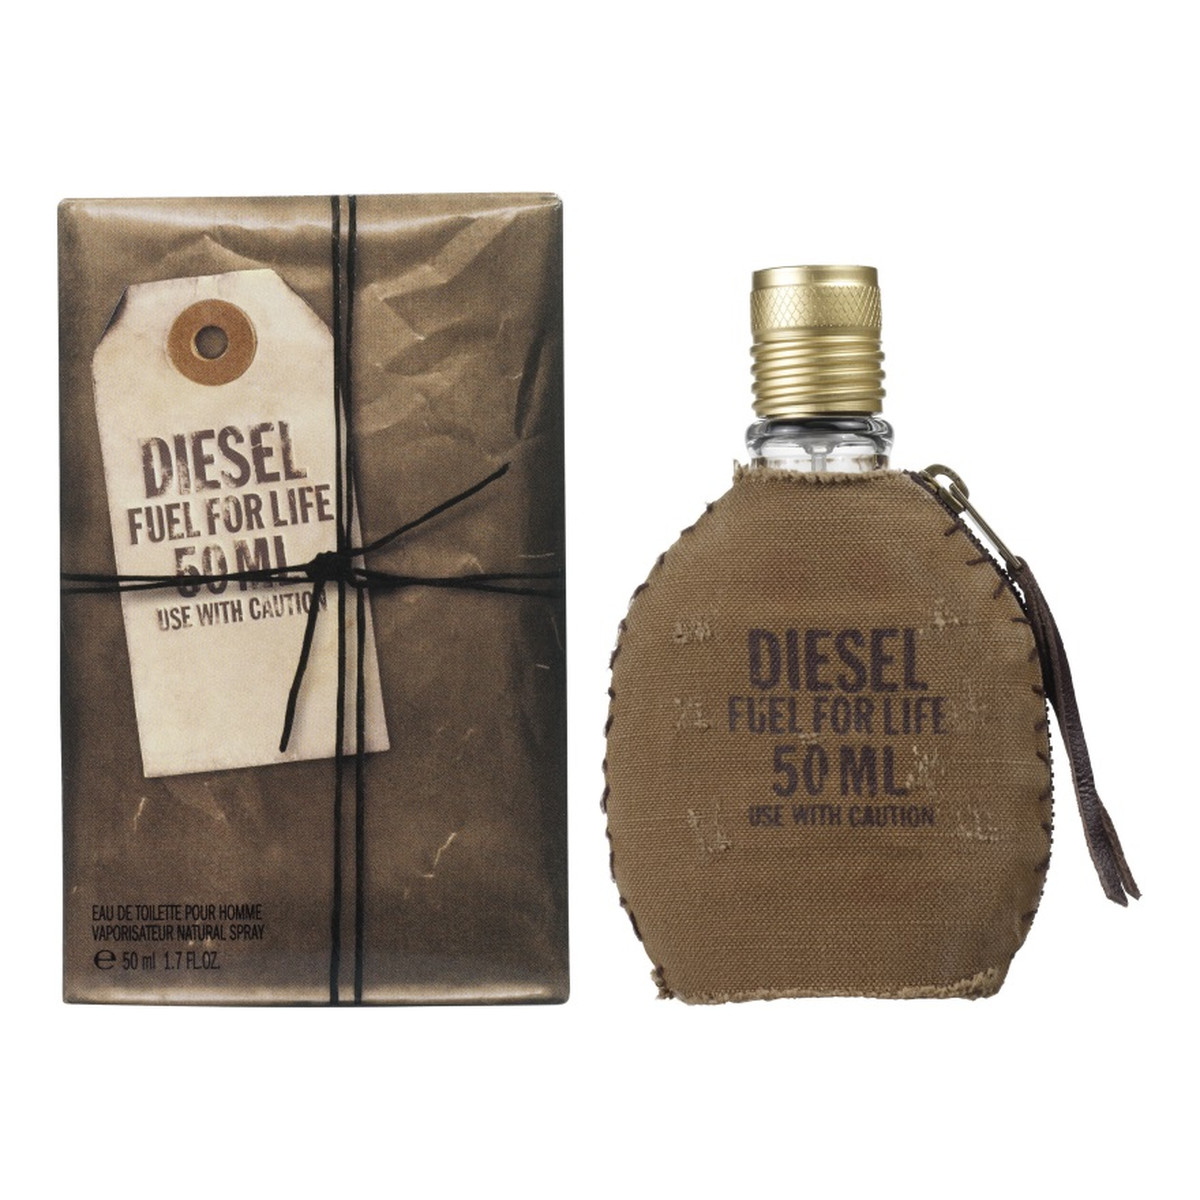 Diesel Fuel For Life for Men Woda toaletowa spray 50ml